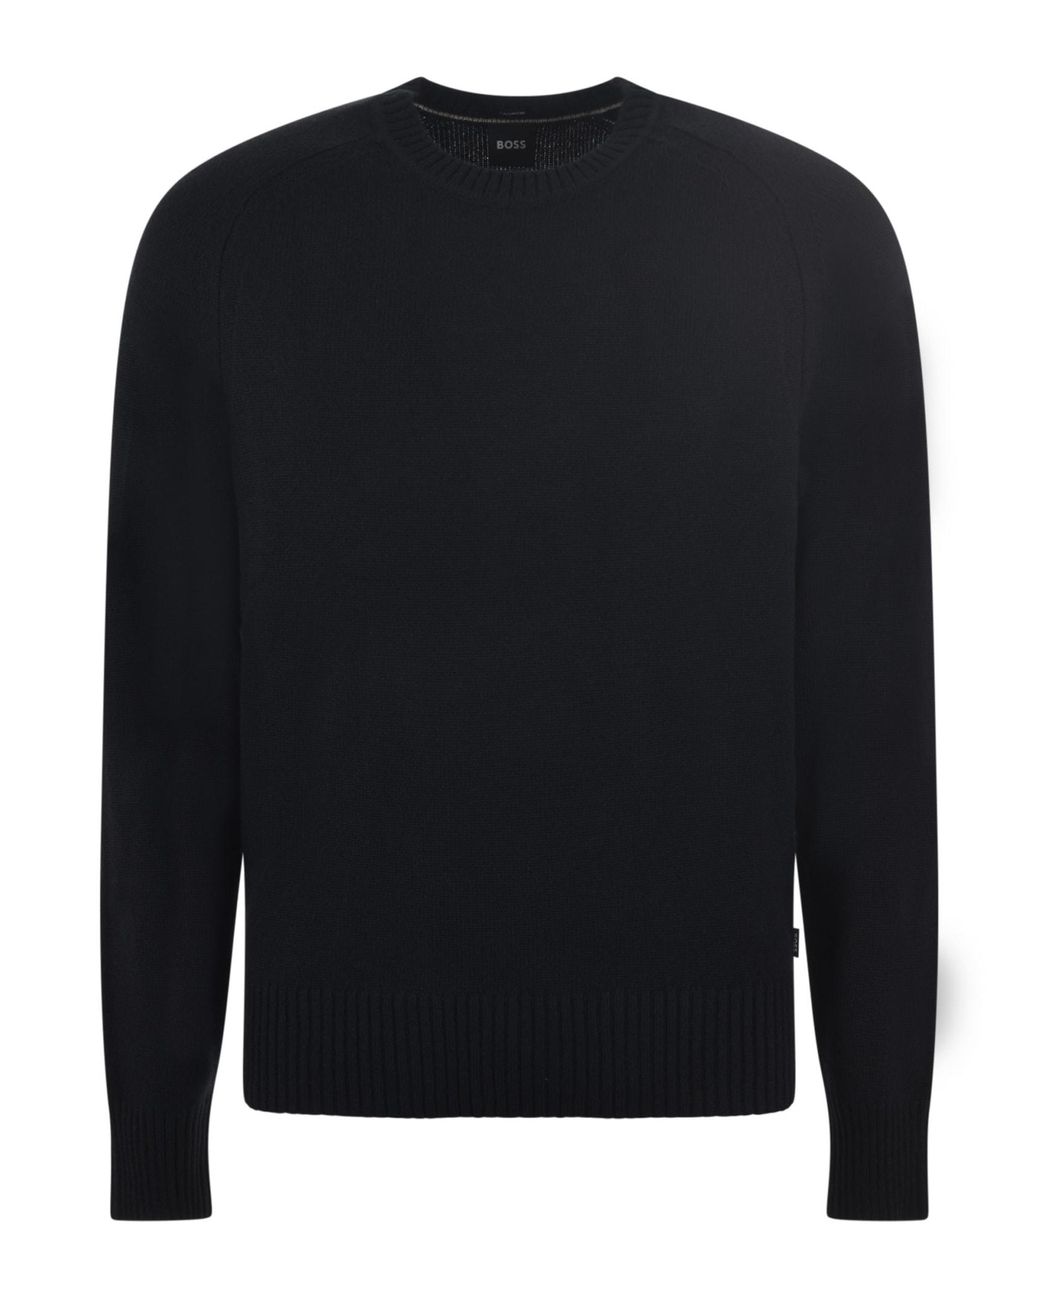 BOSS by HUGO BOSS Sweater in Black for Men